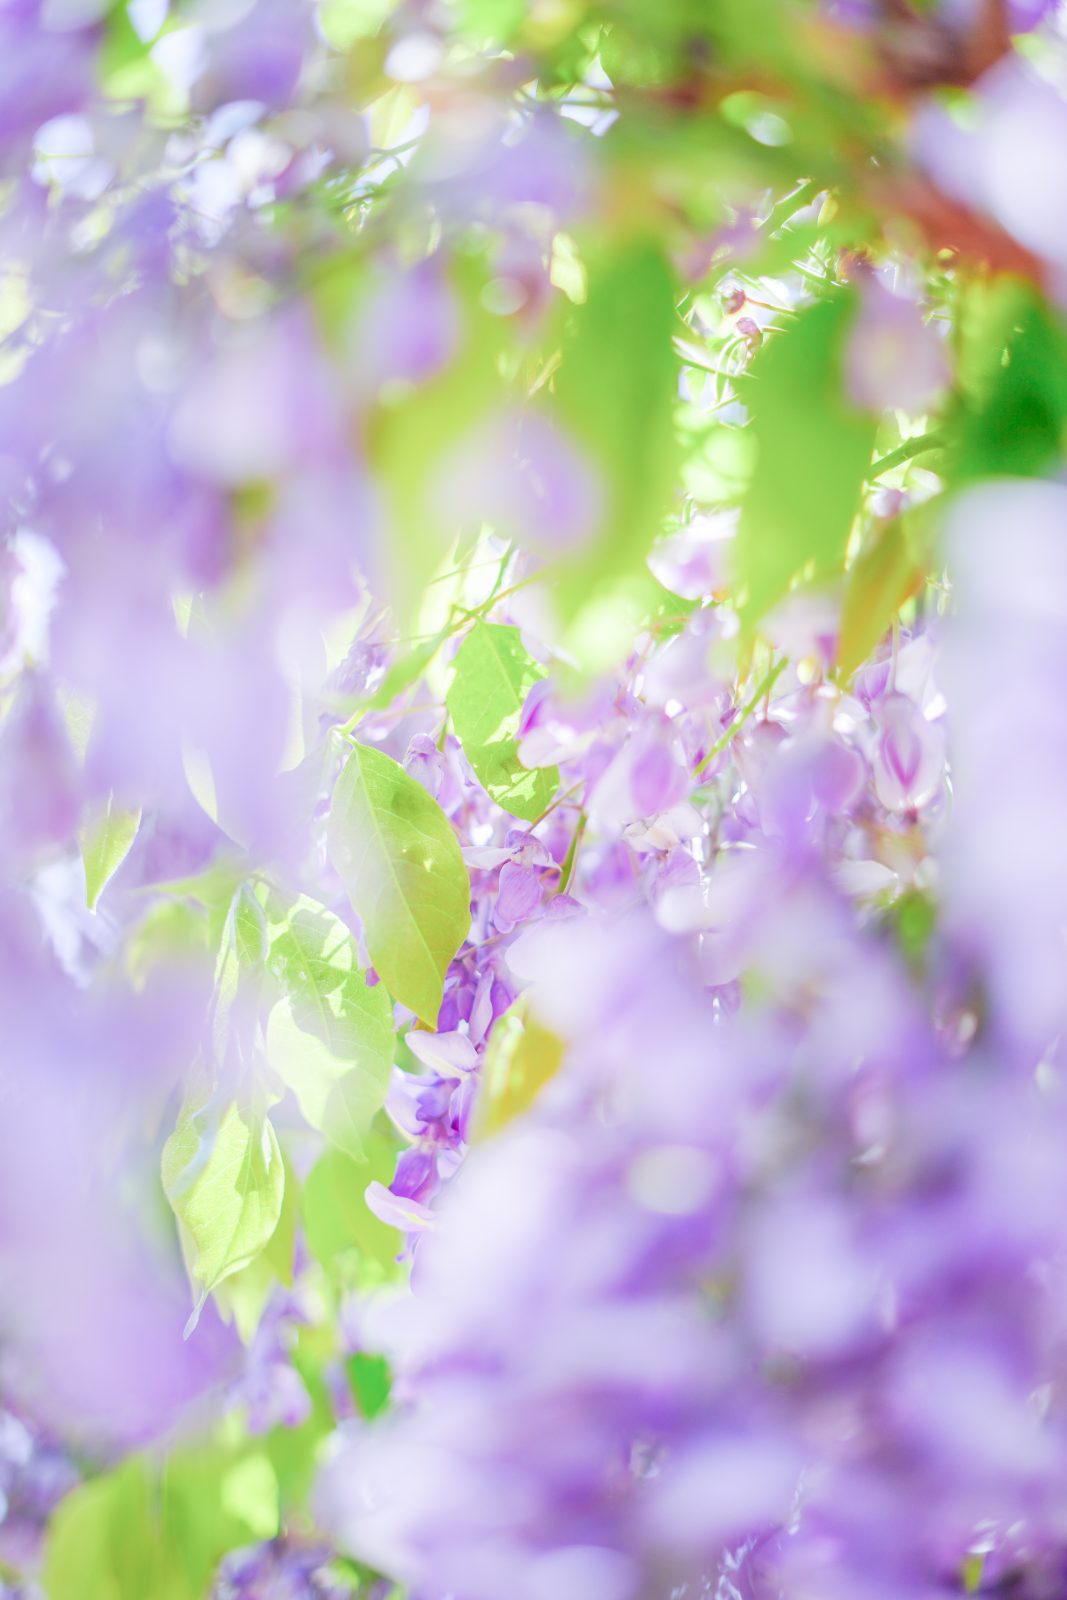 松阪農業公園ベルファームの写真「宝石のように輝く藤」